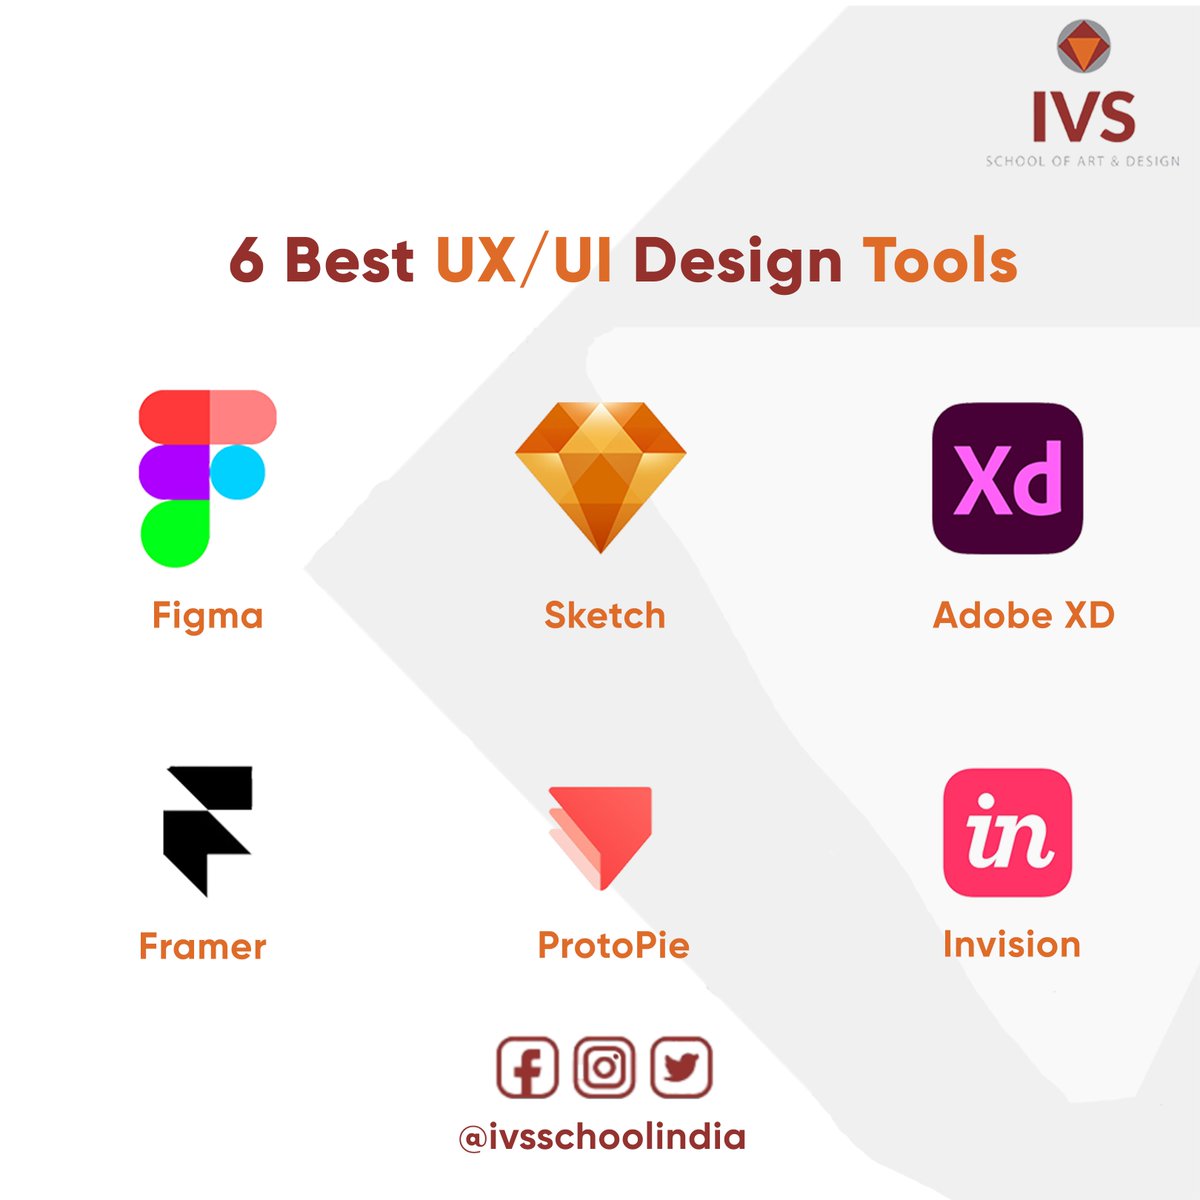 6 Best UX/UI Design Tools
1. Figma
2. Sketch
3. Adobe XD
4. Framer
5. ProtoPie
6. Invision
#IVSScholOfDesign #uidesign  #design #course #ui #ux #designer #uiuxdesign #uxdesigner #uxdesigners #Figma #sketch #adobe #framer #Protopie #invision #tools #carrepair #skills #knowledge